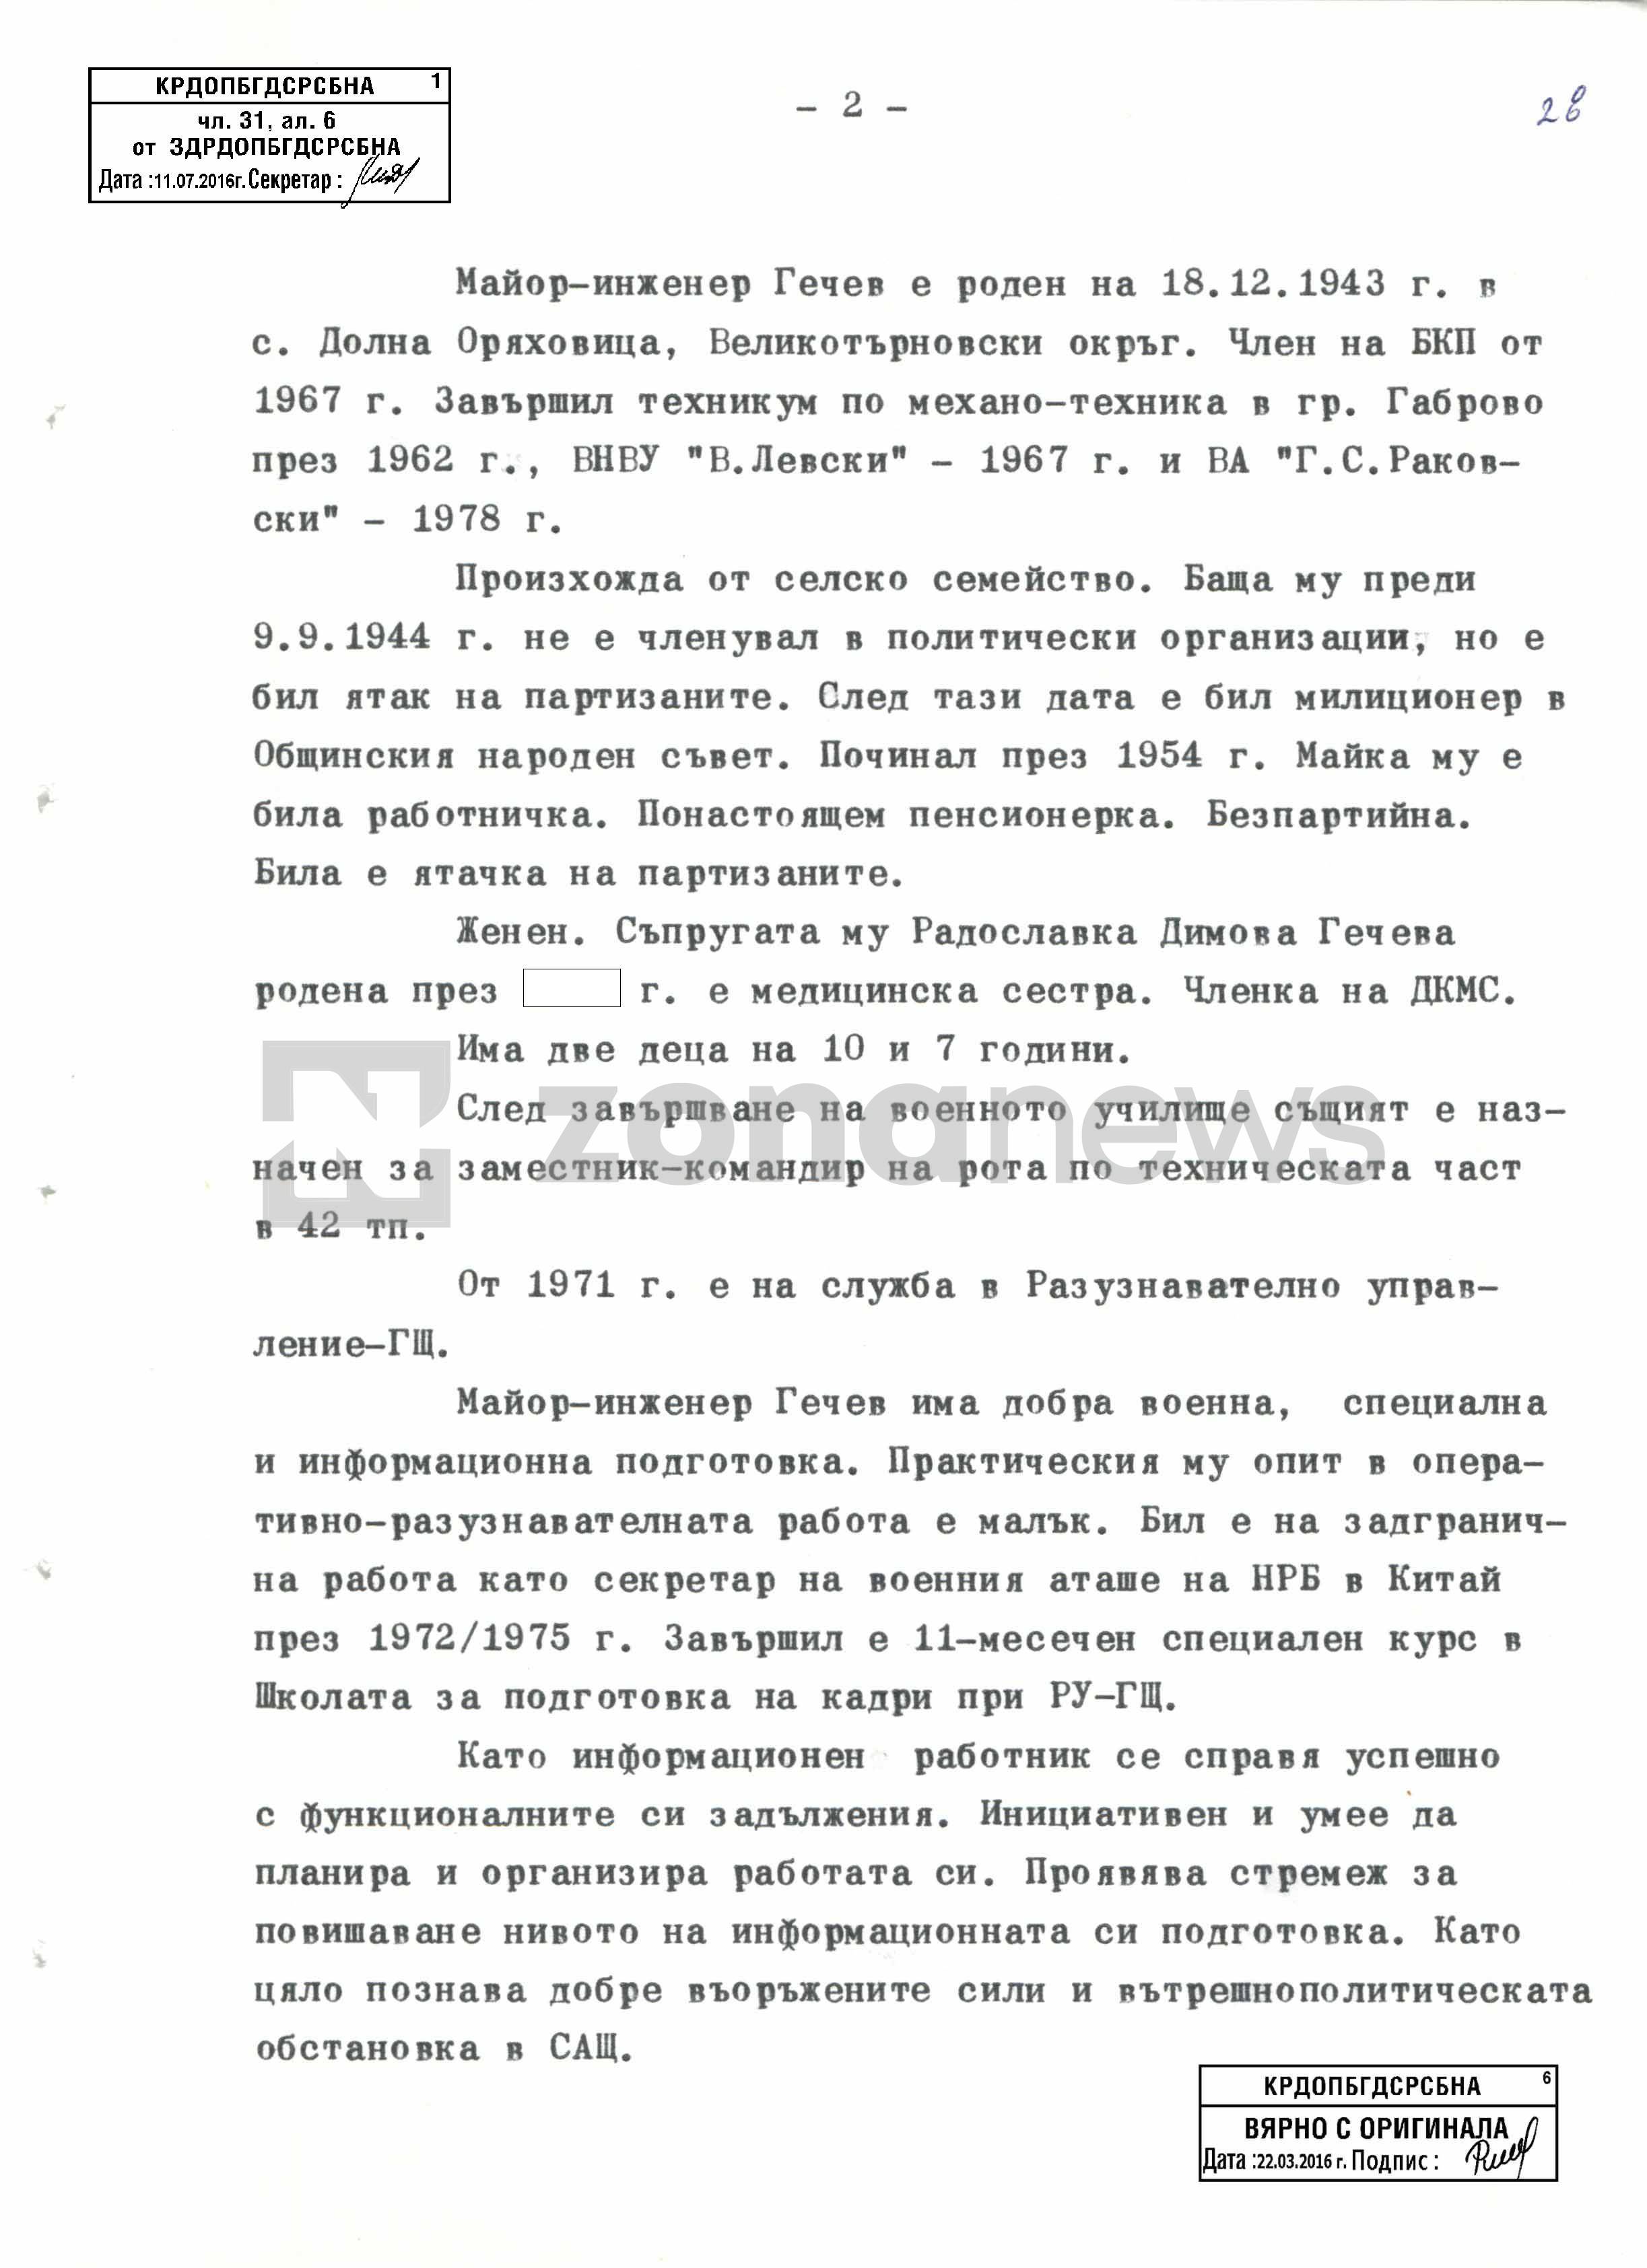 Предложението за изпращането на майор Любомир Гечев на задгранична работа като старши помощник военен аташе във Вашингтон 